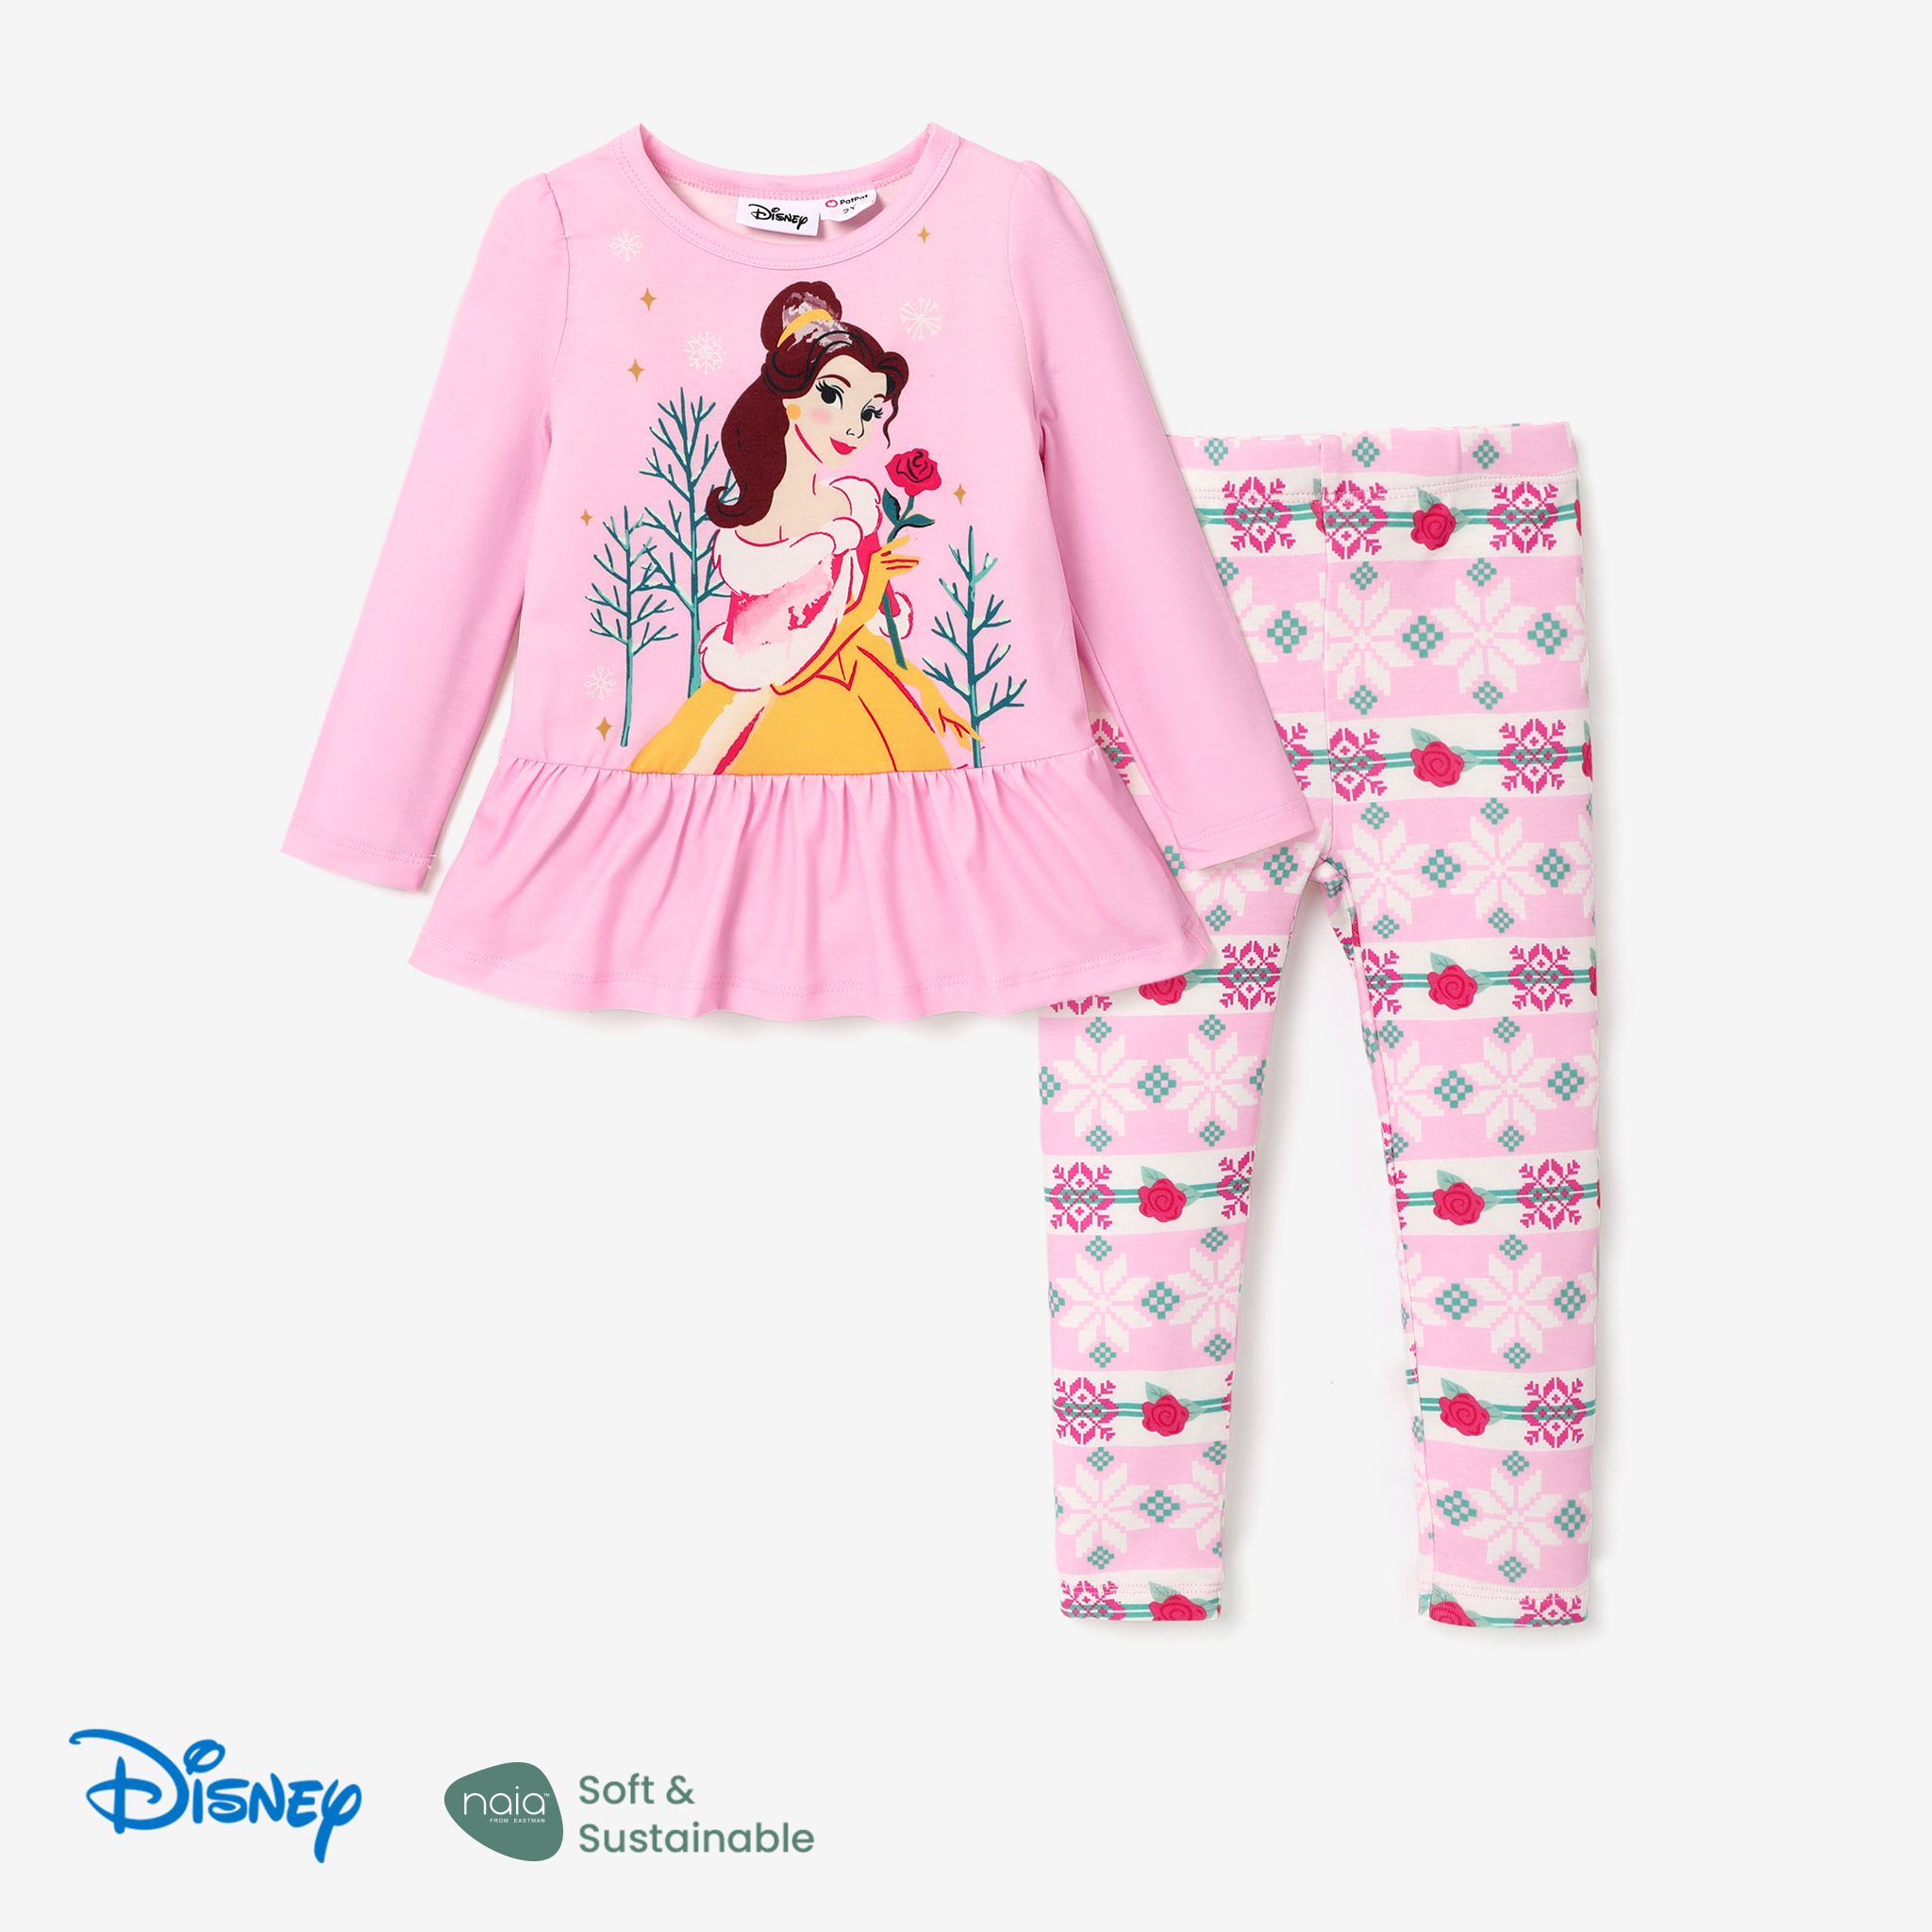 Disney Princess Toddler Girl 2pcs Naiaâ¢ Character Print Peplum Long-sleeve Tee And Snow Flakes Pants Set